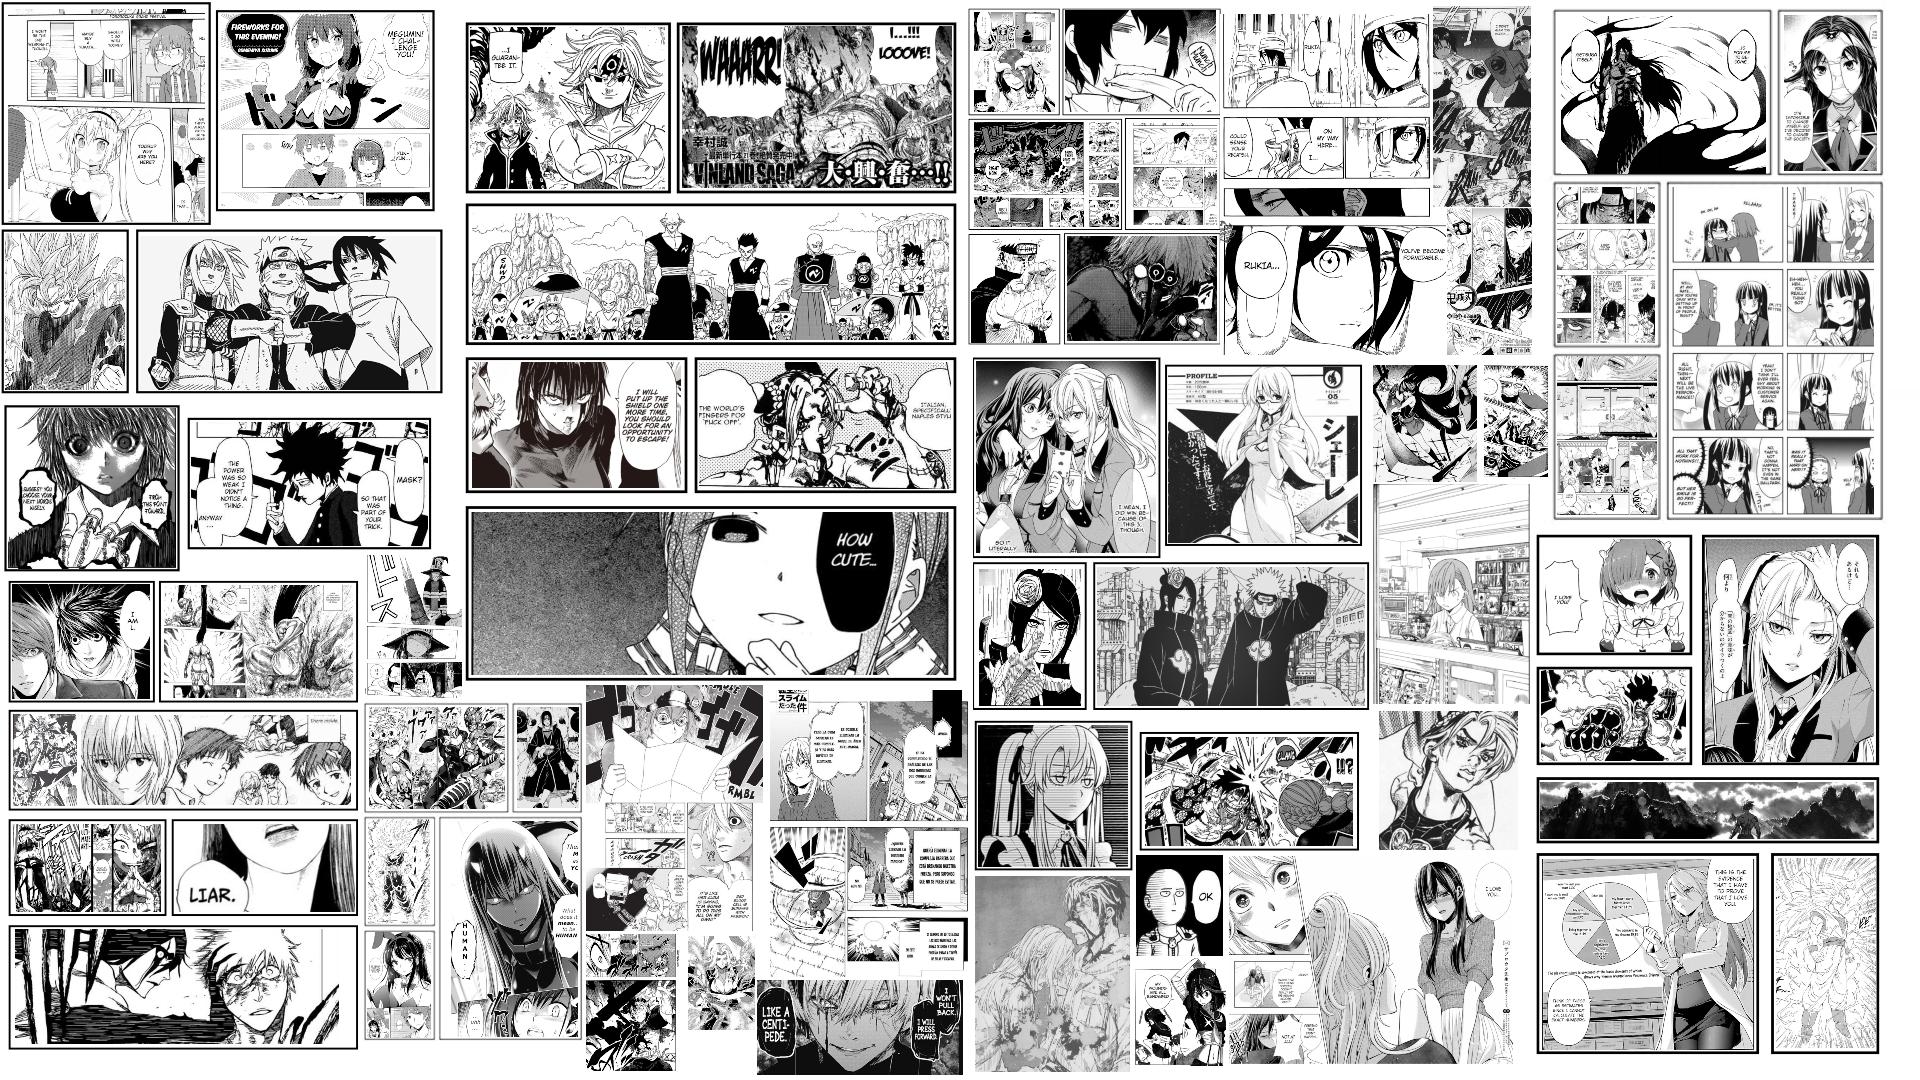 Hình nền manga là một sự kết hợp hoàn hảo giữa tính nghệ thuật và cá tính. Với những tông màu tươi sáng, những nhân vật được thiết kế tinh xảo, bạn sẽ không thể rời mắt khỏi các hình nền manga này.